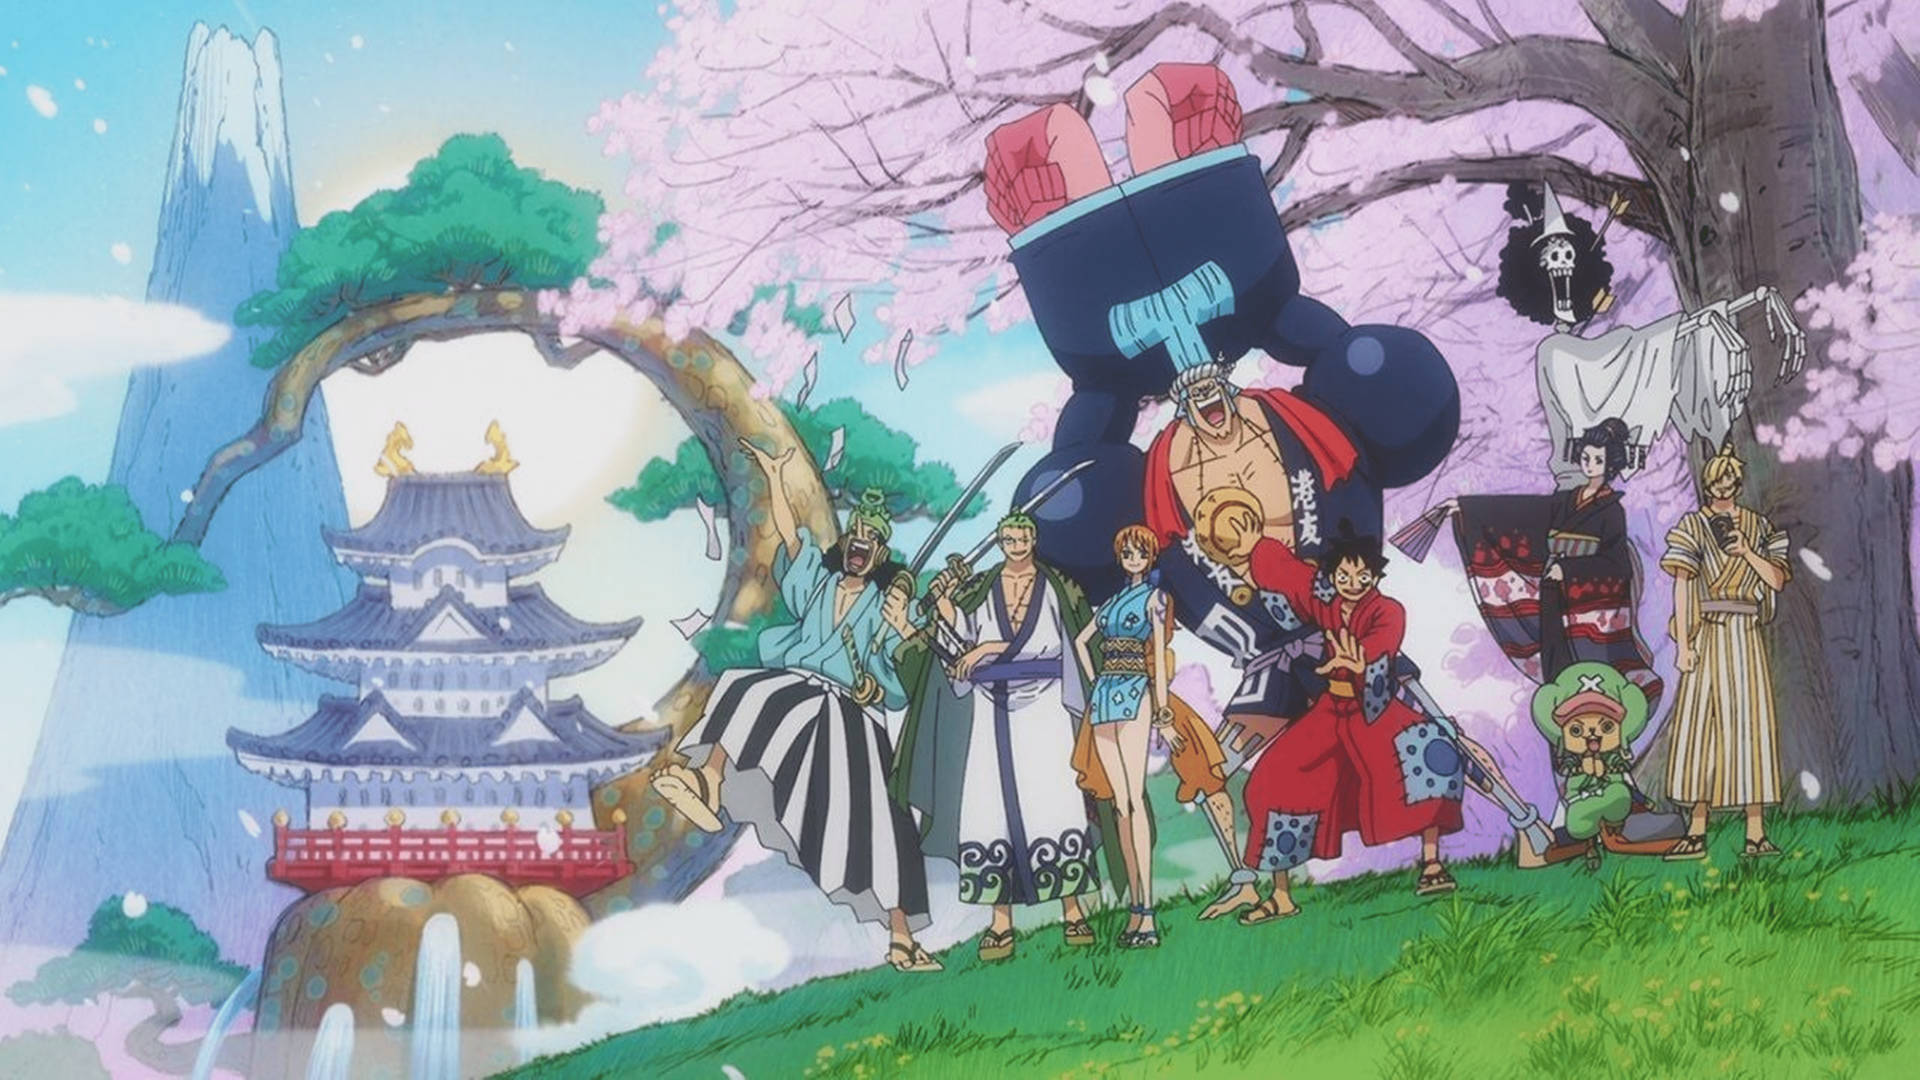 Thỏa mãn niềm đam mê anime One Piece của bạn với bộ sưu tập hình nền One Piece 4k để tải về và sử dụng ngay lập tức trên màn hình của bạn. Các chi tiết nổi bật và đầy đủ của các nhân vật sẽ trở nên rõ ràng và sắc nét khi bạn chọn một hình nền chất lượng 4k của One Piece.